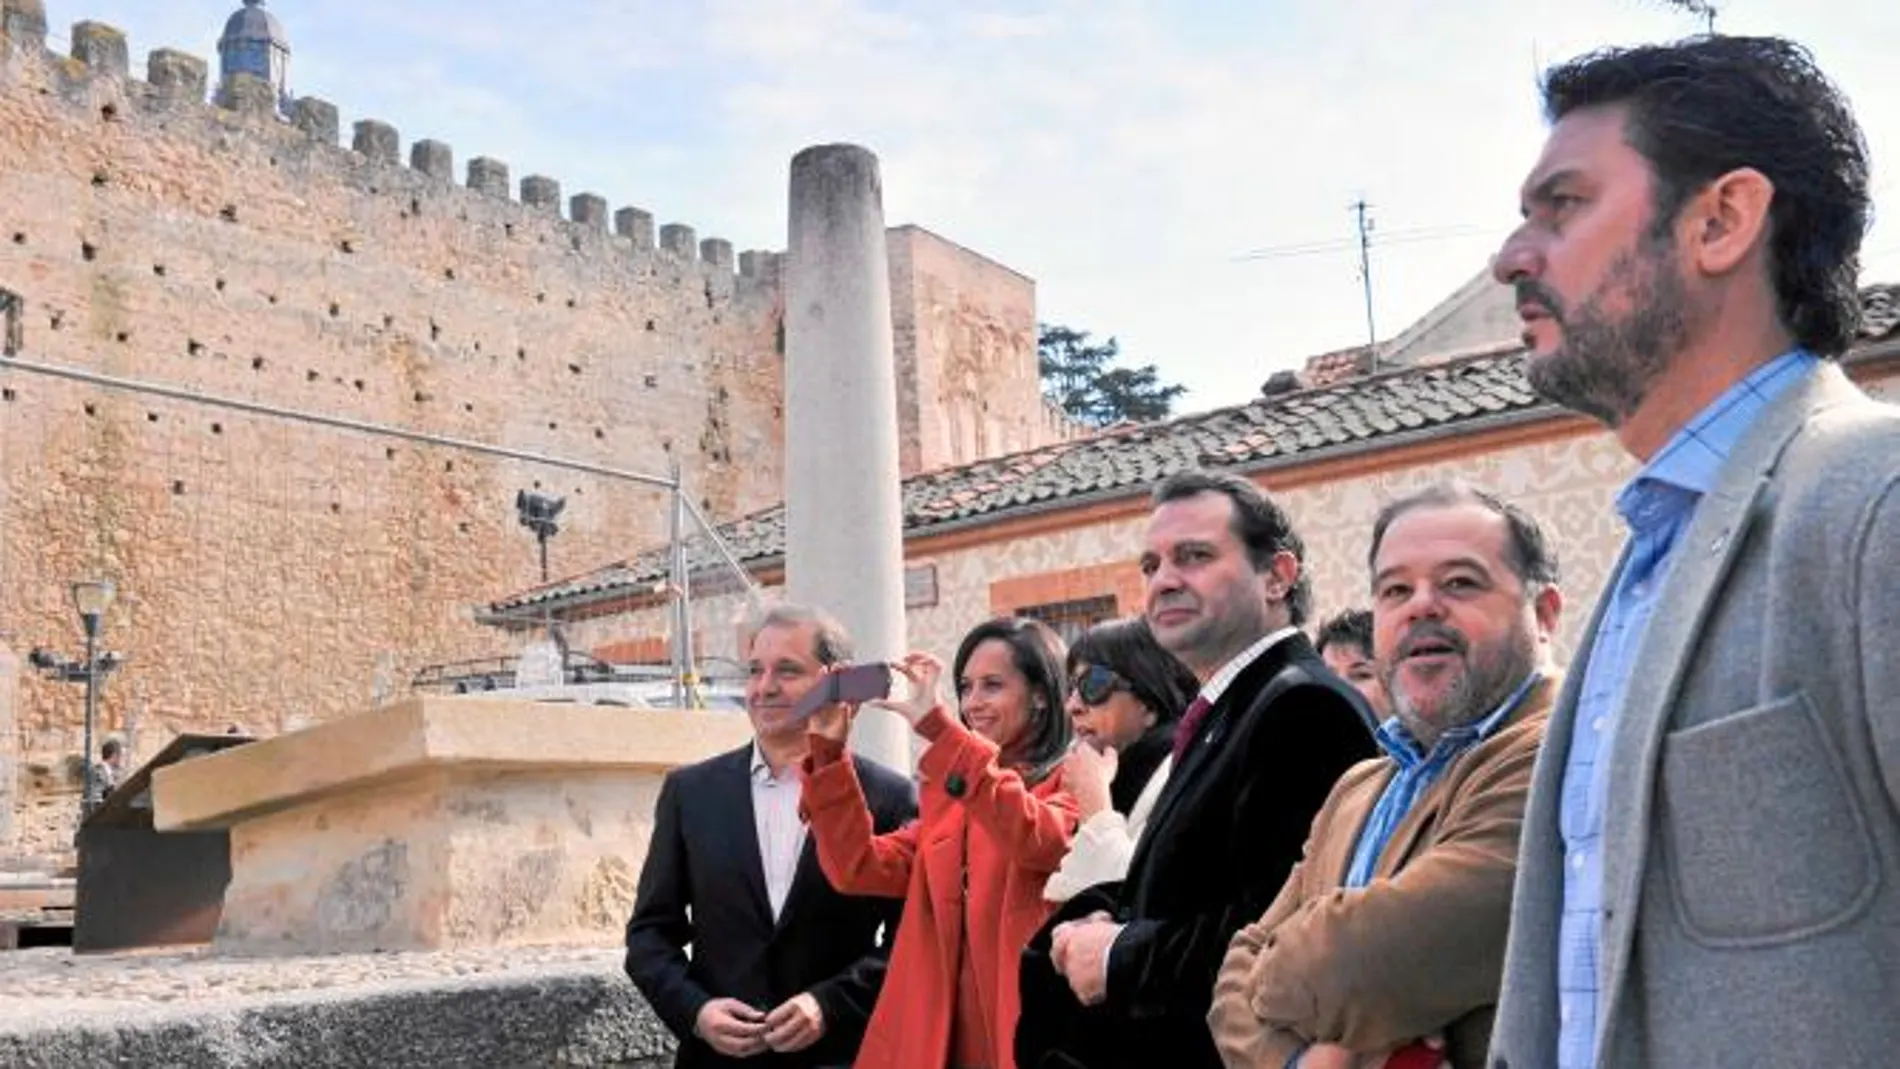 La secretaria de Estado de Vivienda, Beatriz Corredor, visita Segovia junto a Arahuetes y Vázquez, entre otros